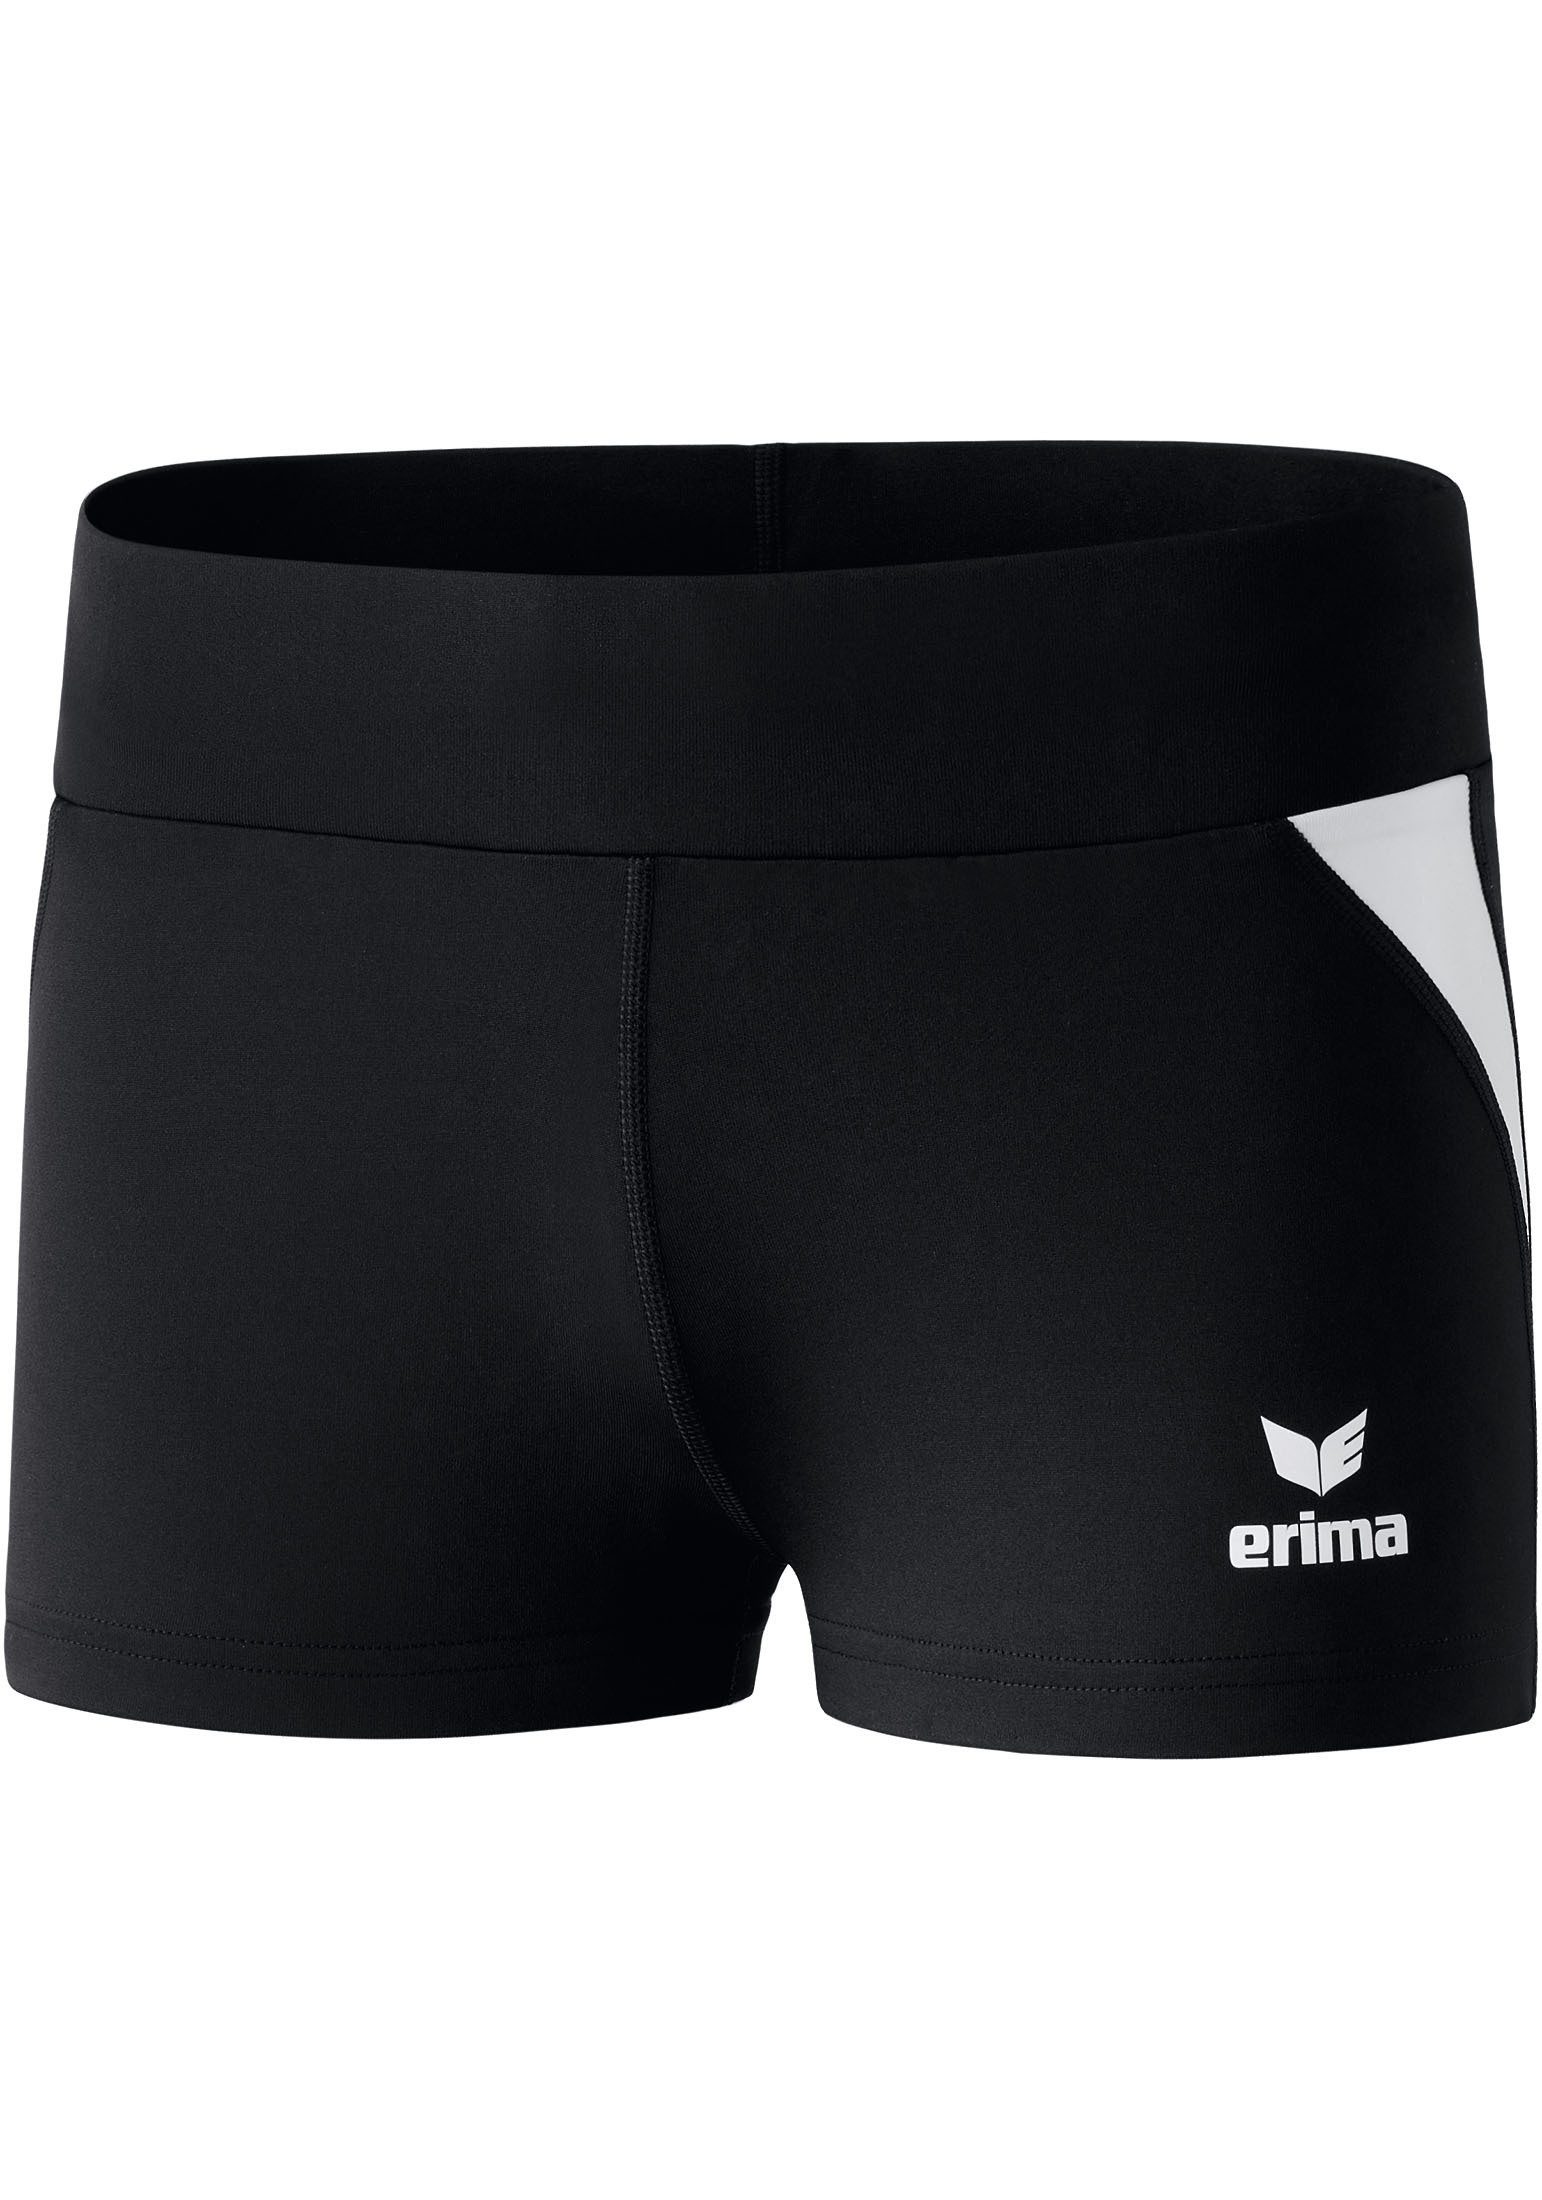 Erima Trainingsshorts Damen Athletic Line Hotpants